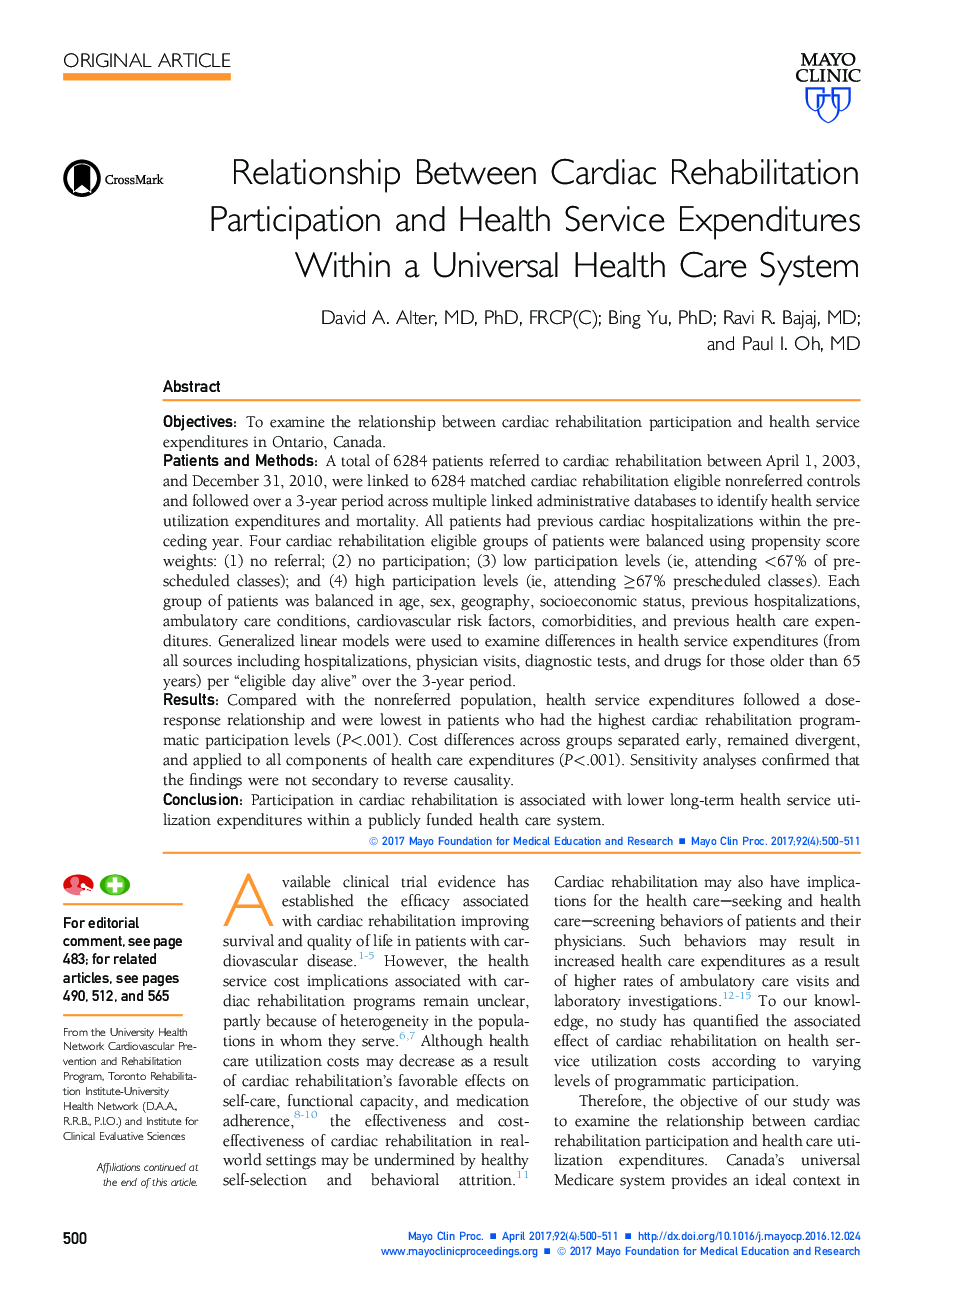 رابطه بین مشارکت توانبخشی قلب و هزینه های خدمات بهداشتی در یک سیستم مراقبت بهداشتی جهانی 